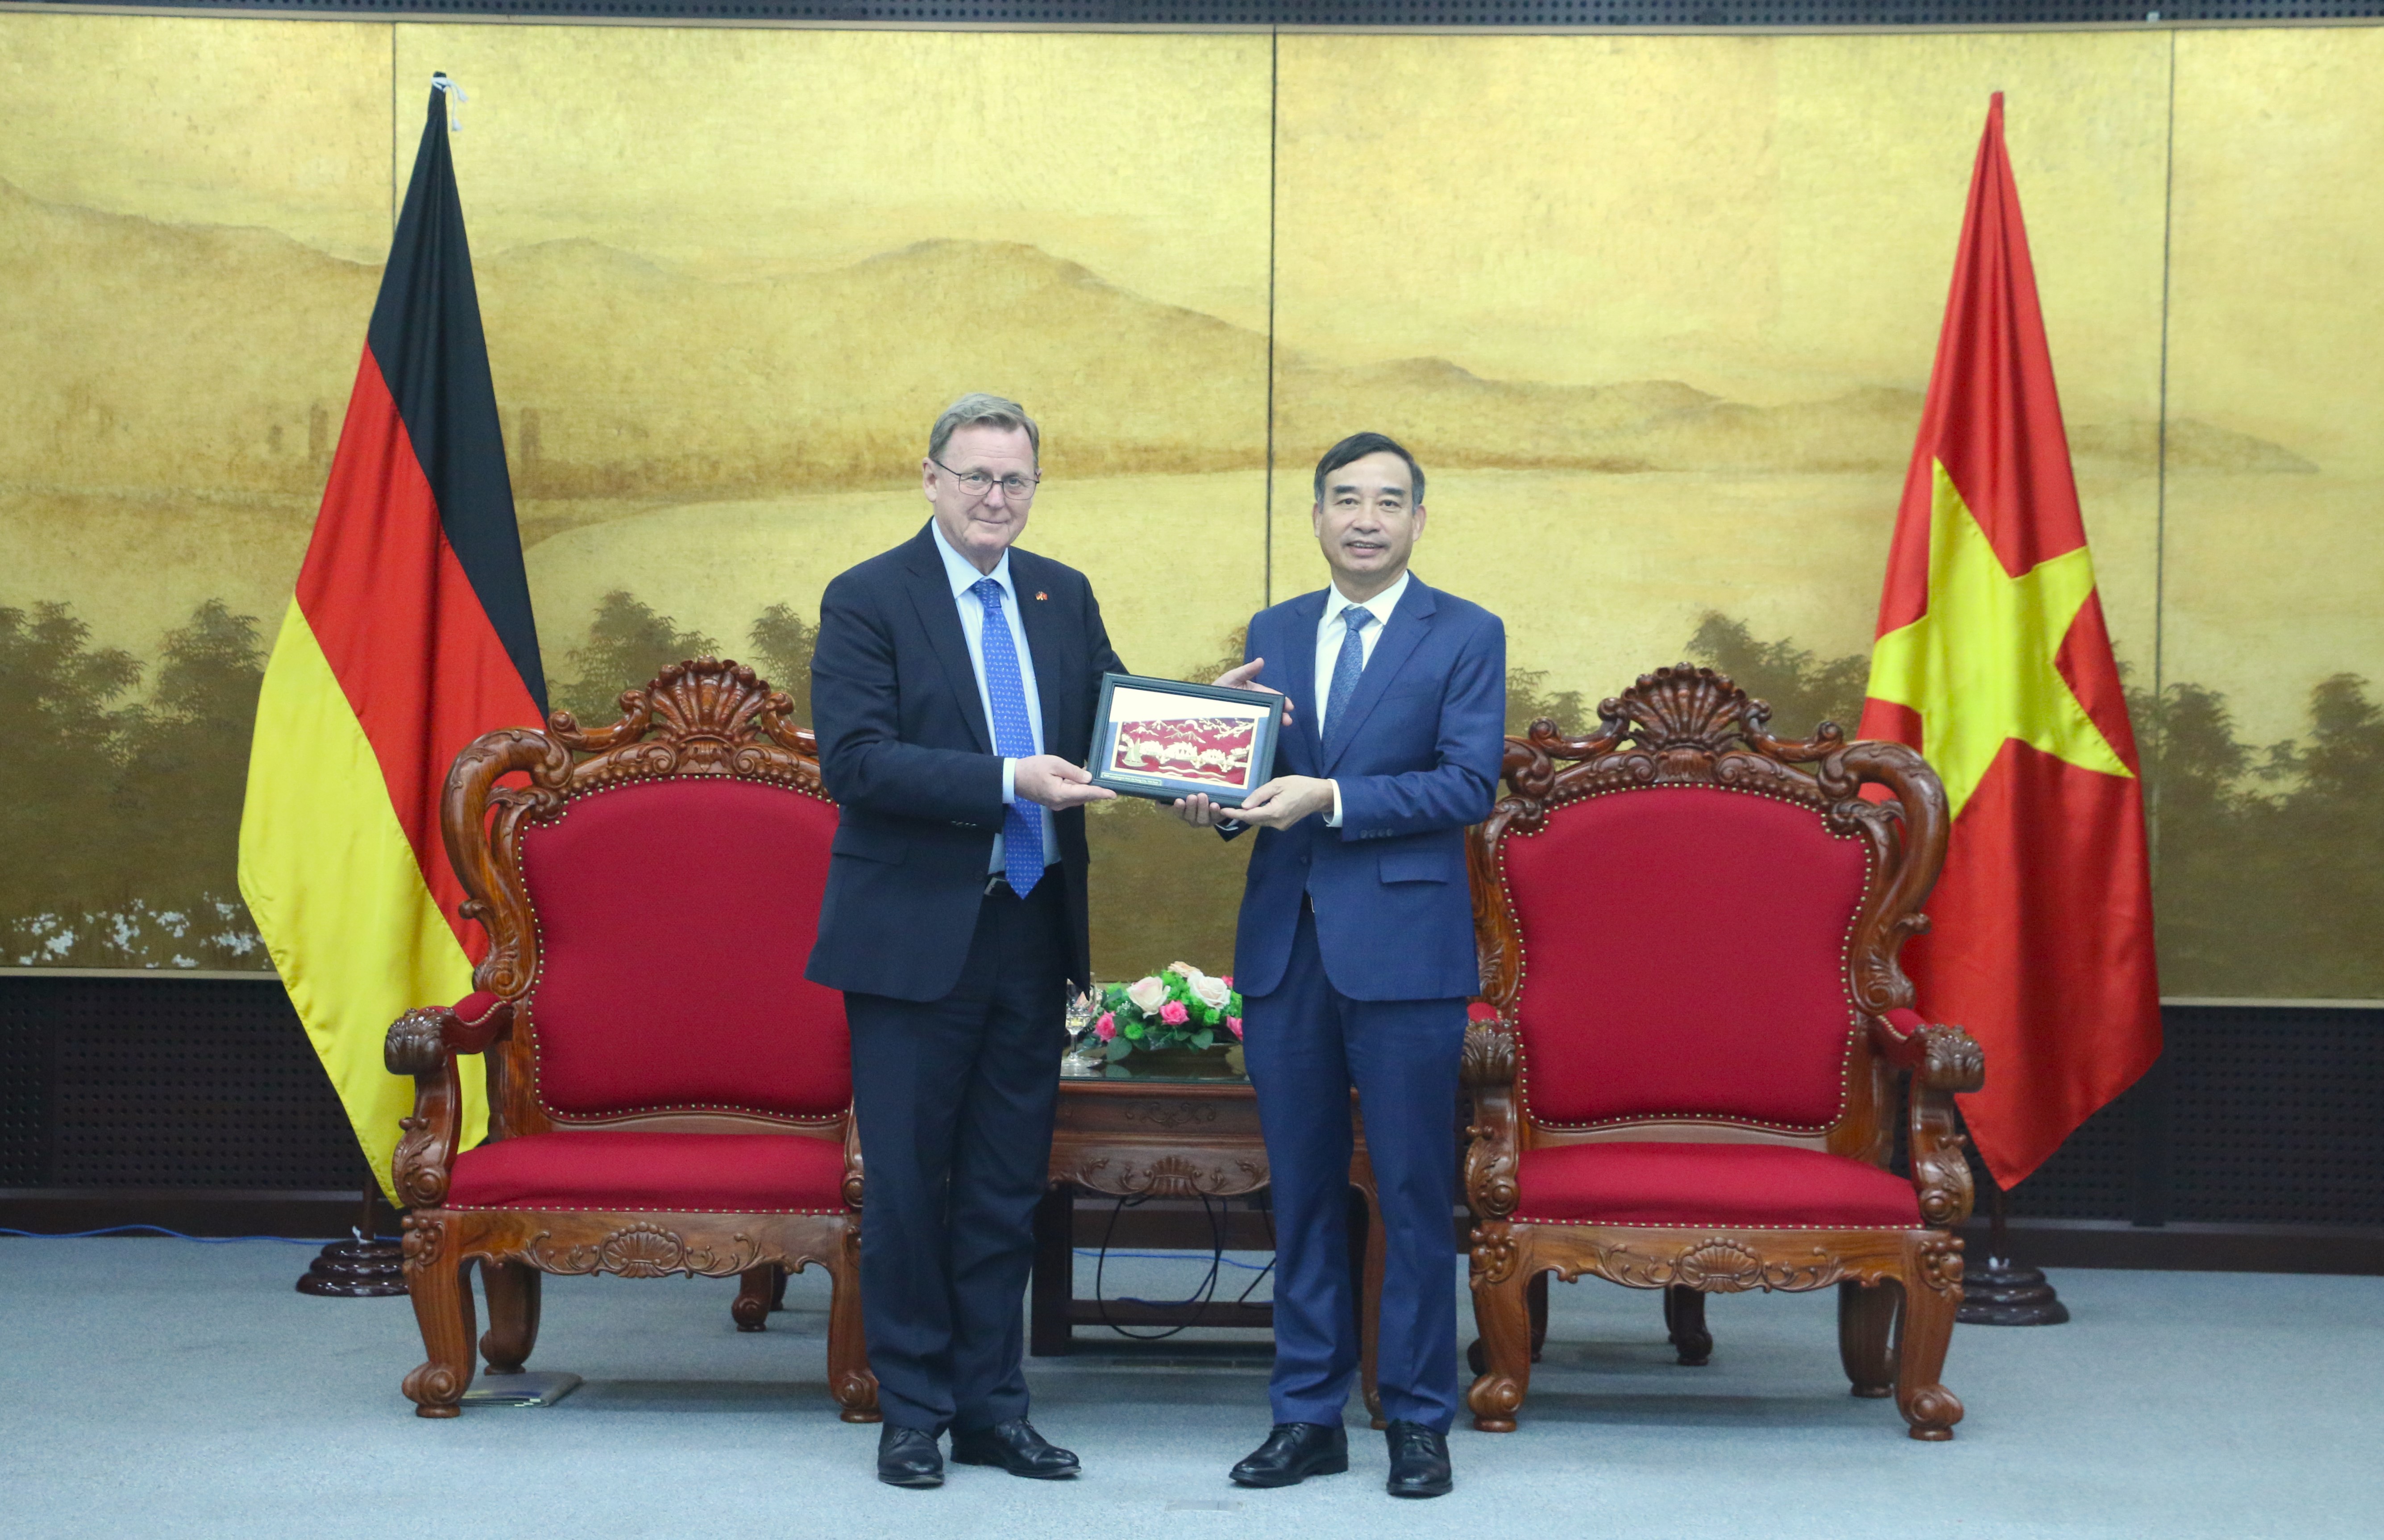 Chủ tịch UBND thành phê Lê Trung Chinh (bên phải) tặng quà lưu niệm đến Thủ hiến bang Thuringen, Cộng hòa Liên bang Đức Bolo Ramelow. Ảnh: T.PHƯƠNG